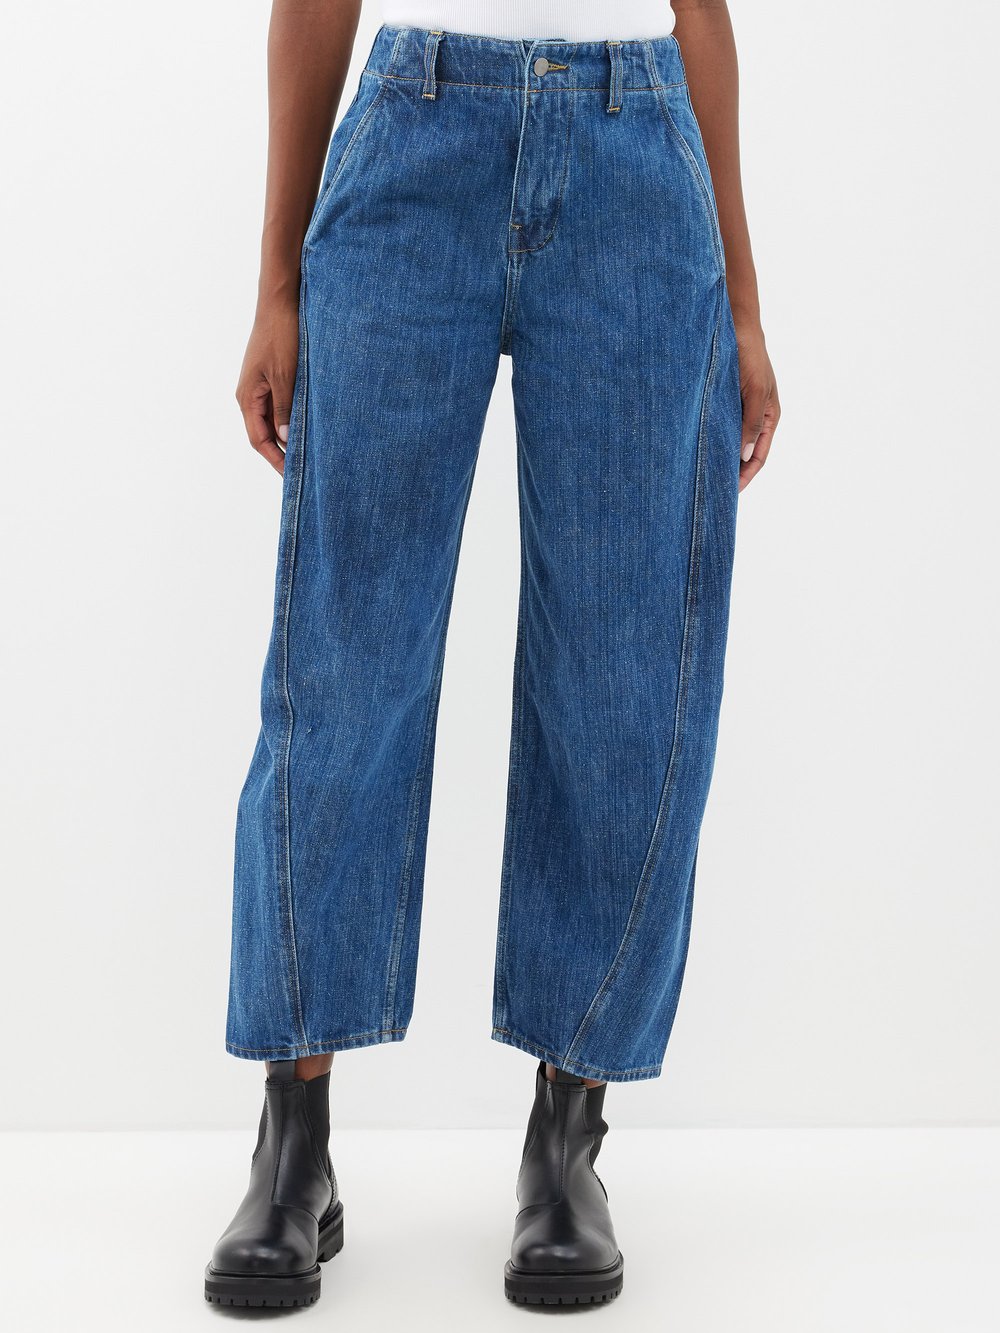 Укороченные джинсы akerman с объемными штанинами Studio Nicholson, синий